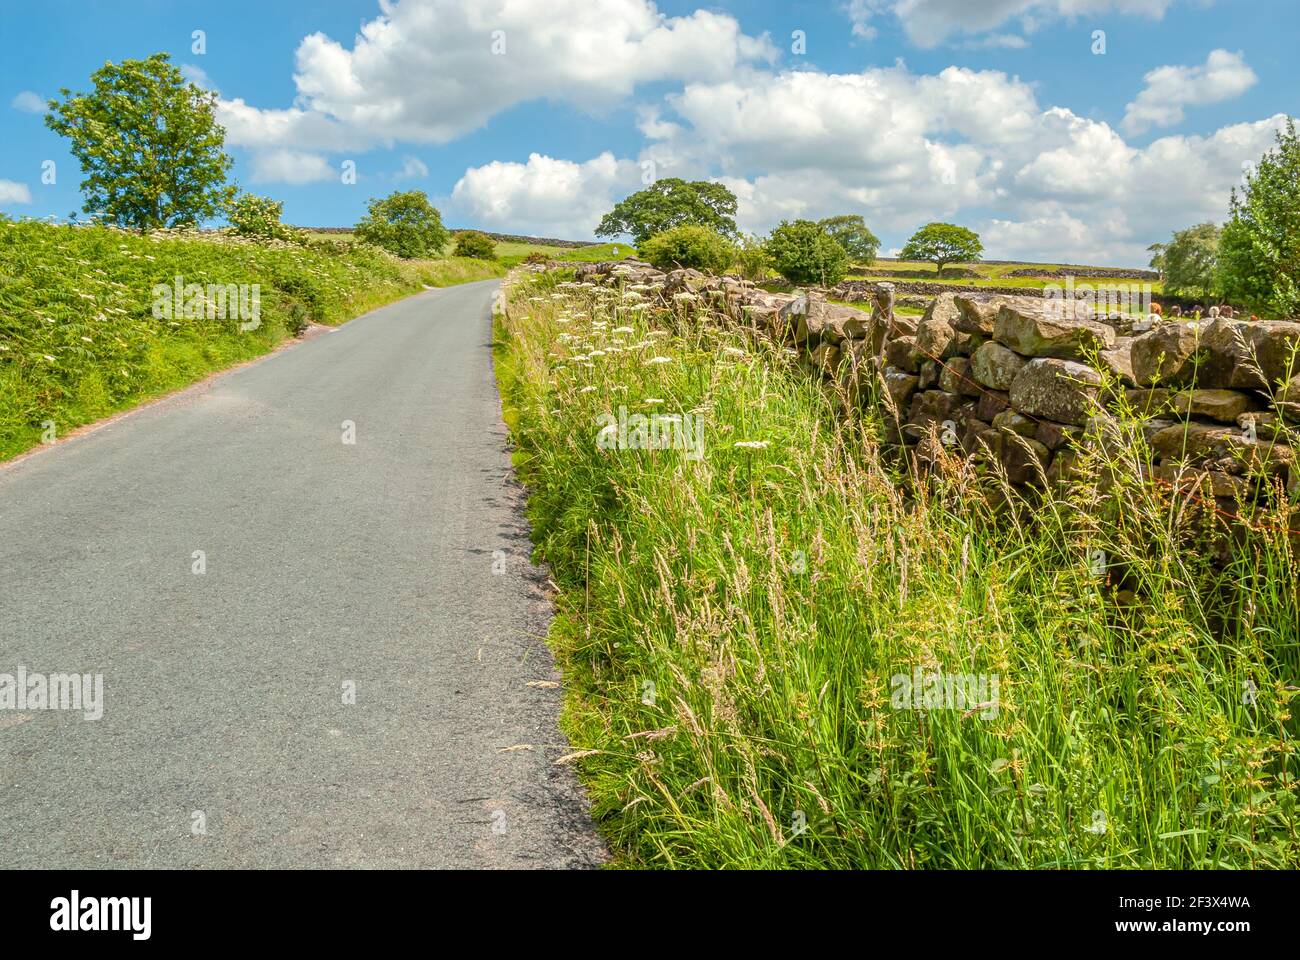 Rue de l'arrière-pays le long d'un mur de pierre sèche dans un paysage d'été aux North York Moors, Angleterre, Royaume-Uni Banque D'Images